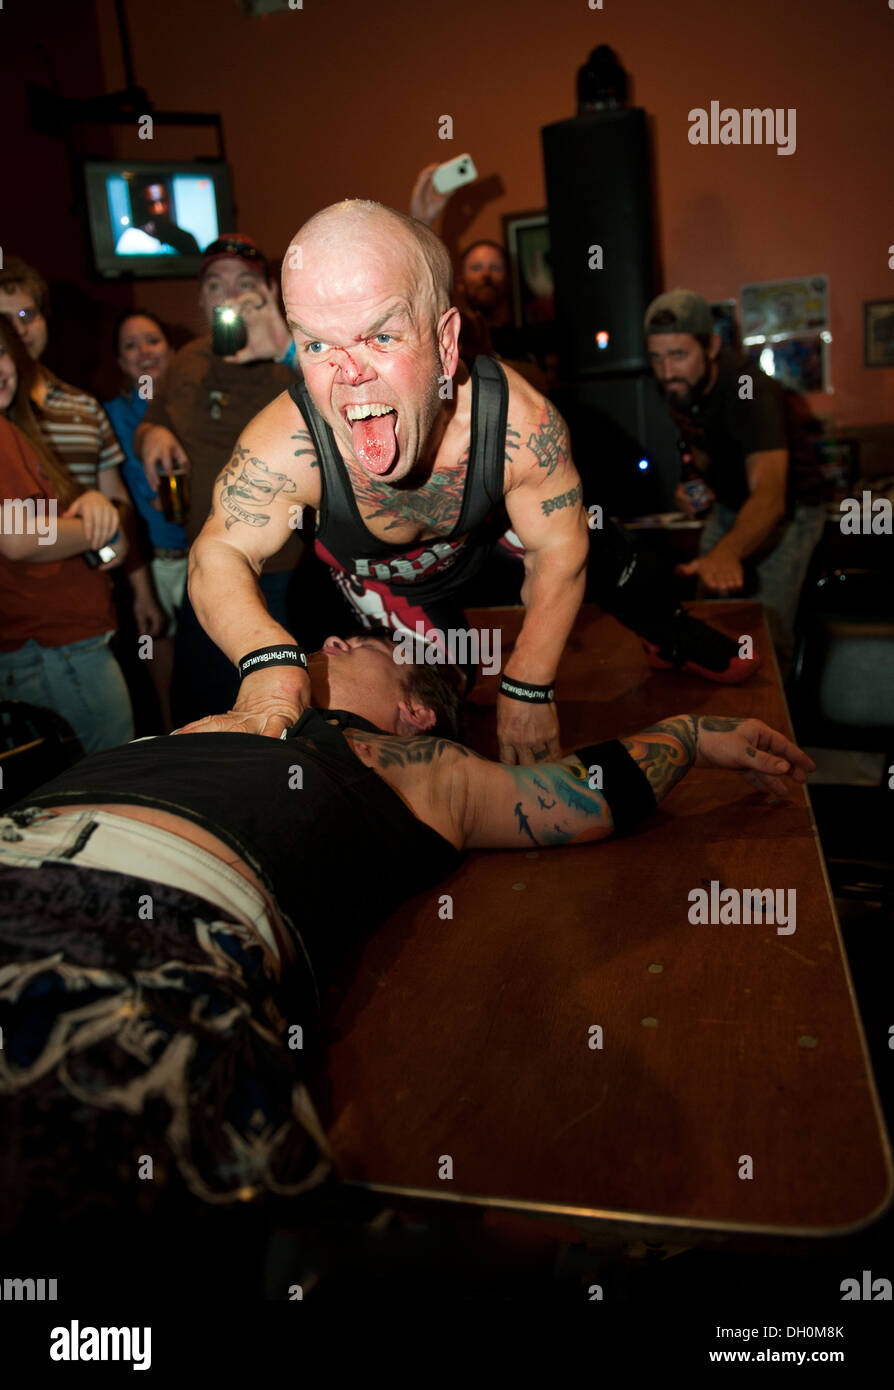 Stevie "Marioneta" de la "media pinta luchadores' psico enano luchando, toma Eric 'Smallz' en una mesa fuera del ring. Foto de stock